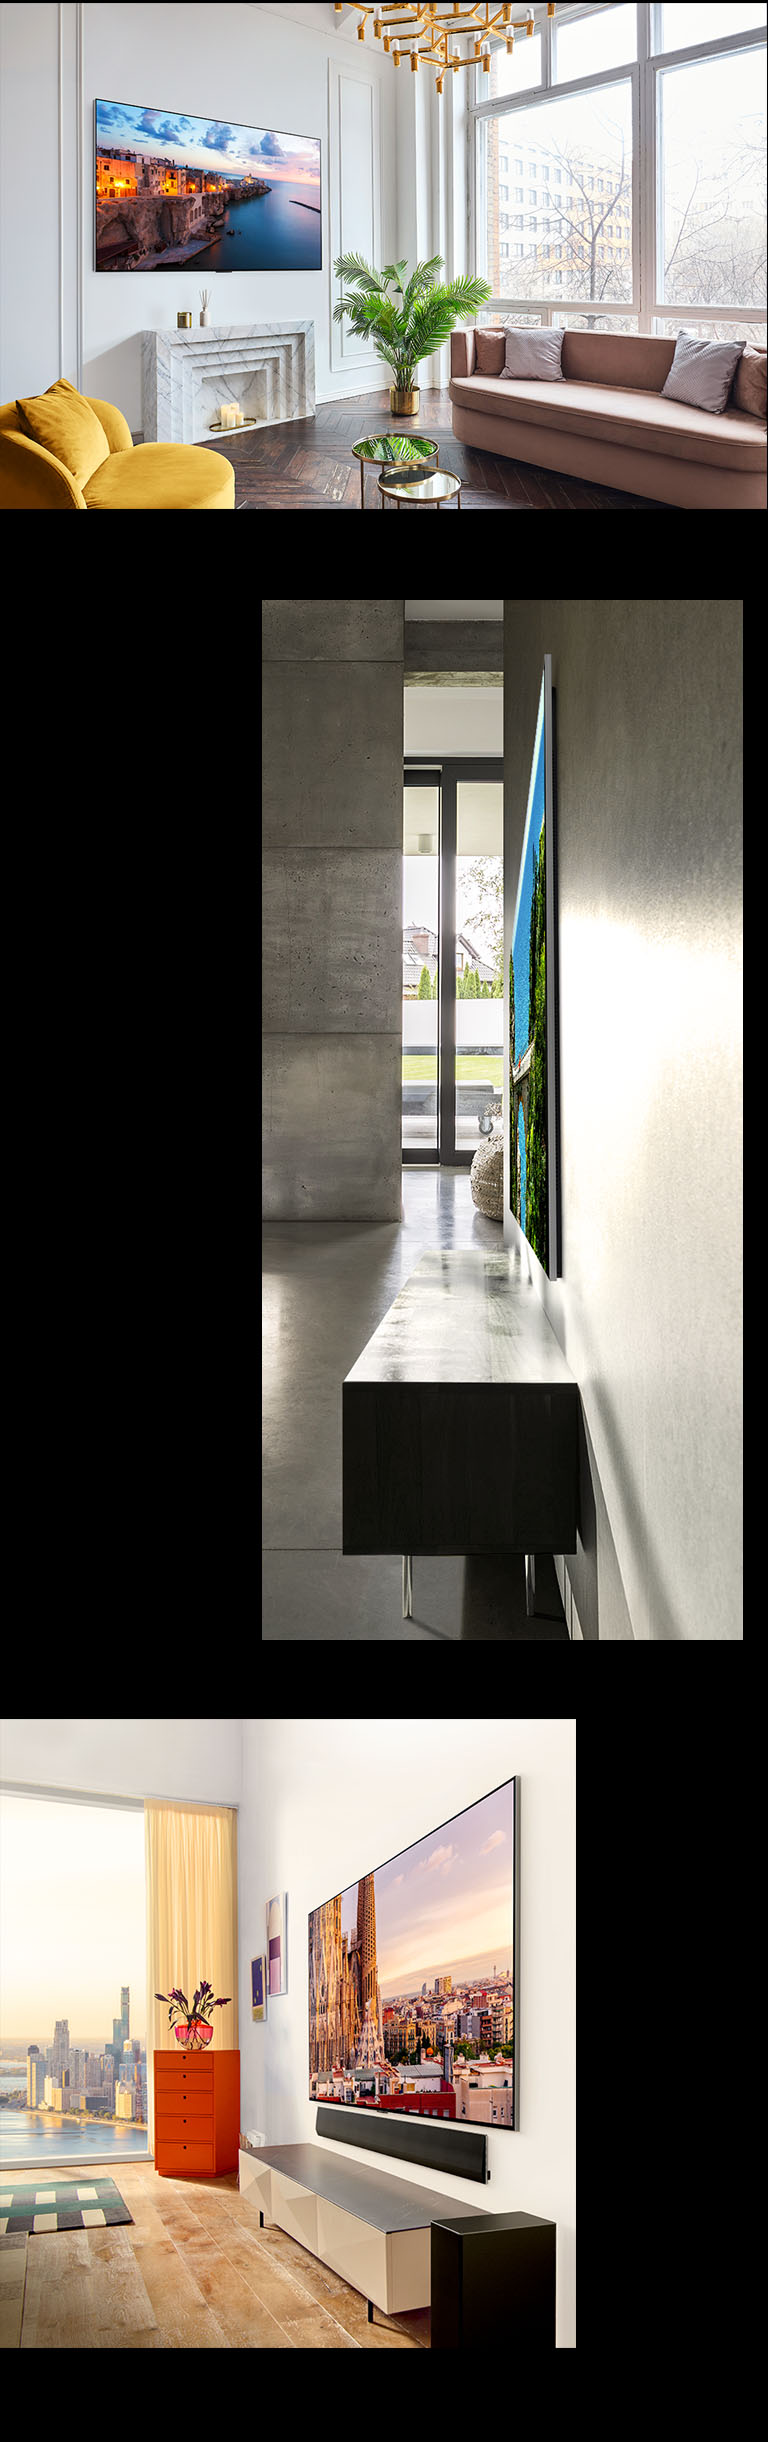 Zdjęcie telewizora LG OLED G3 na ścianie bogato zdobionego pokoju przedstawiającego One Wall Design. Widok z boku niewiarygodnie cienkiej konstrukcji telewizora LG OLED G3. Widok z ukosa telewizora LG OLED G3 na ścianie apartamentu z widokiem na miasto i soundbarem pod spodem.